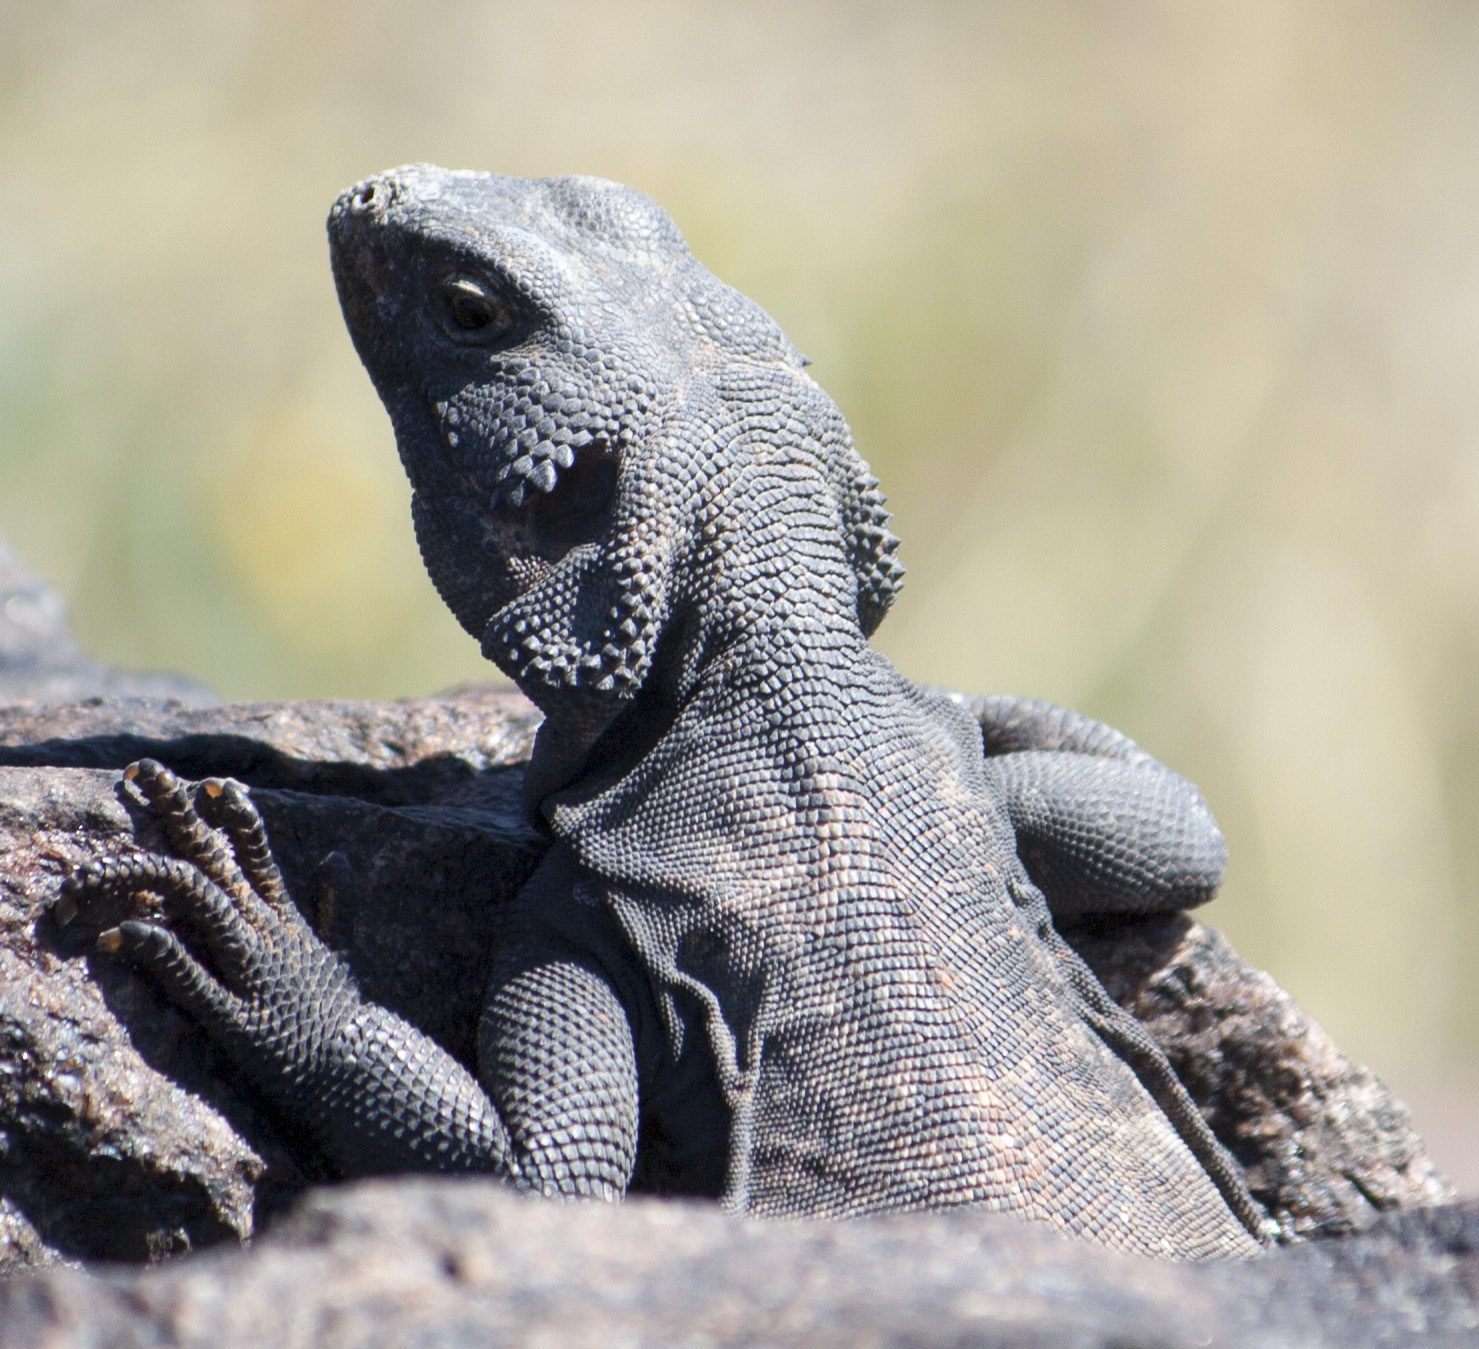 Lizards in Mojave National Preserve